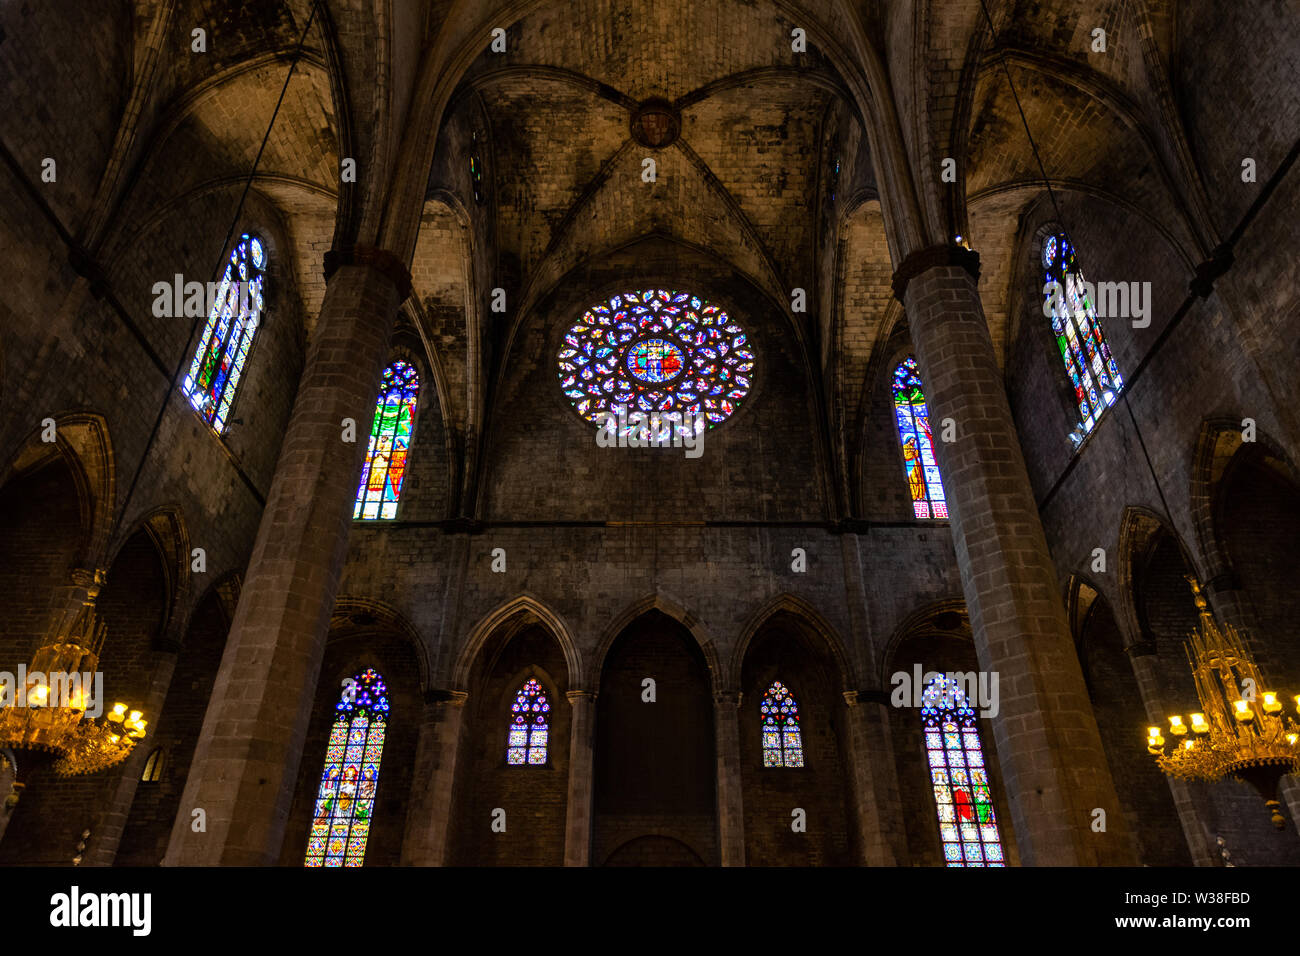 Interno di Santa Maria del Mar e Basilica in tipico stile gotico catalano con gli archi a sesto acuto e alte colonne. Dettaglio della coloratissima rosone. La Foto Stock